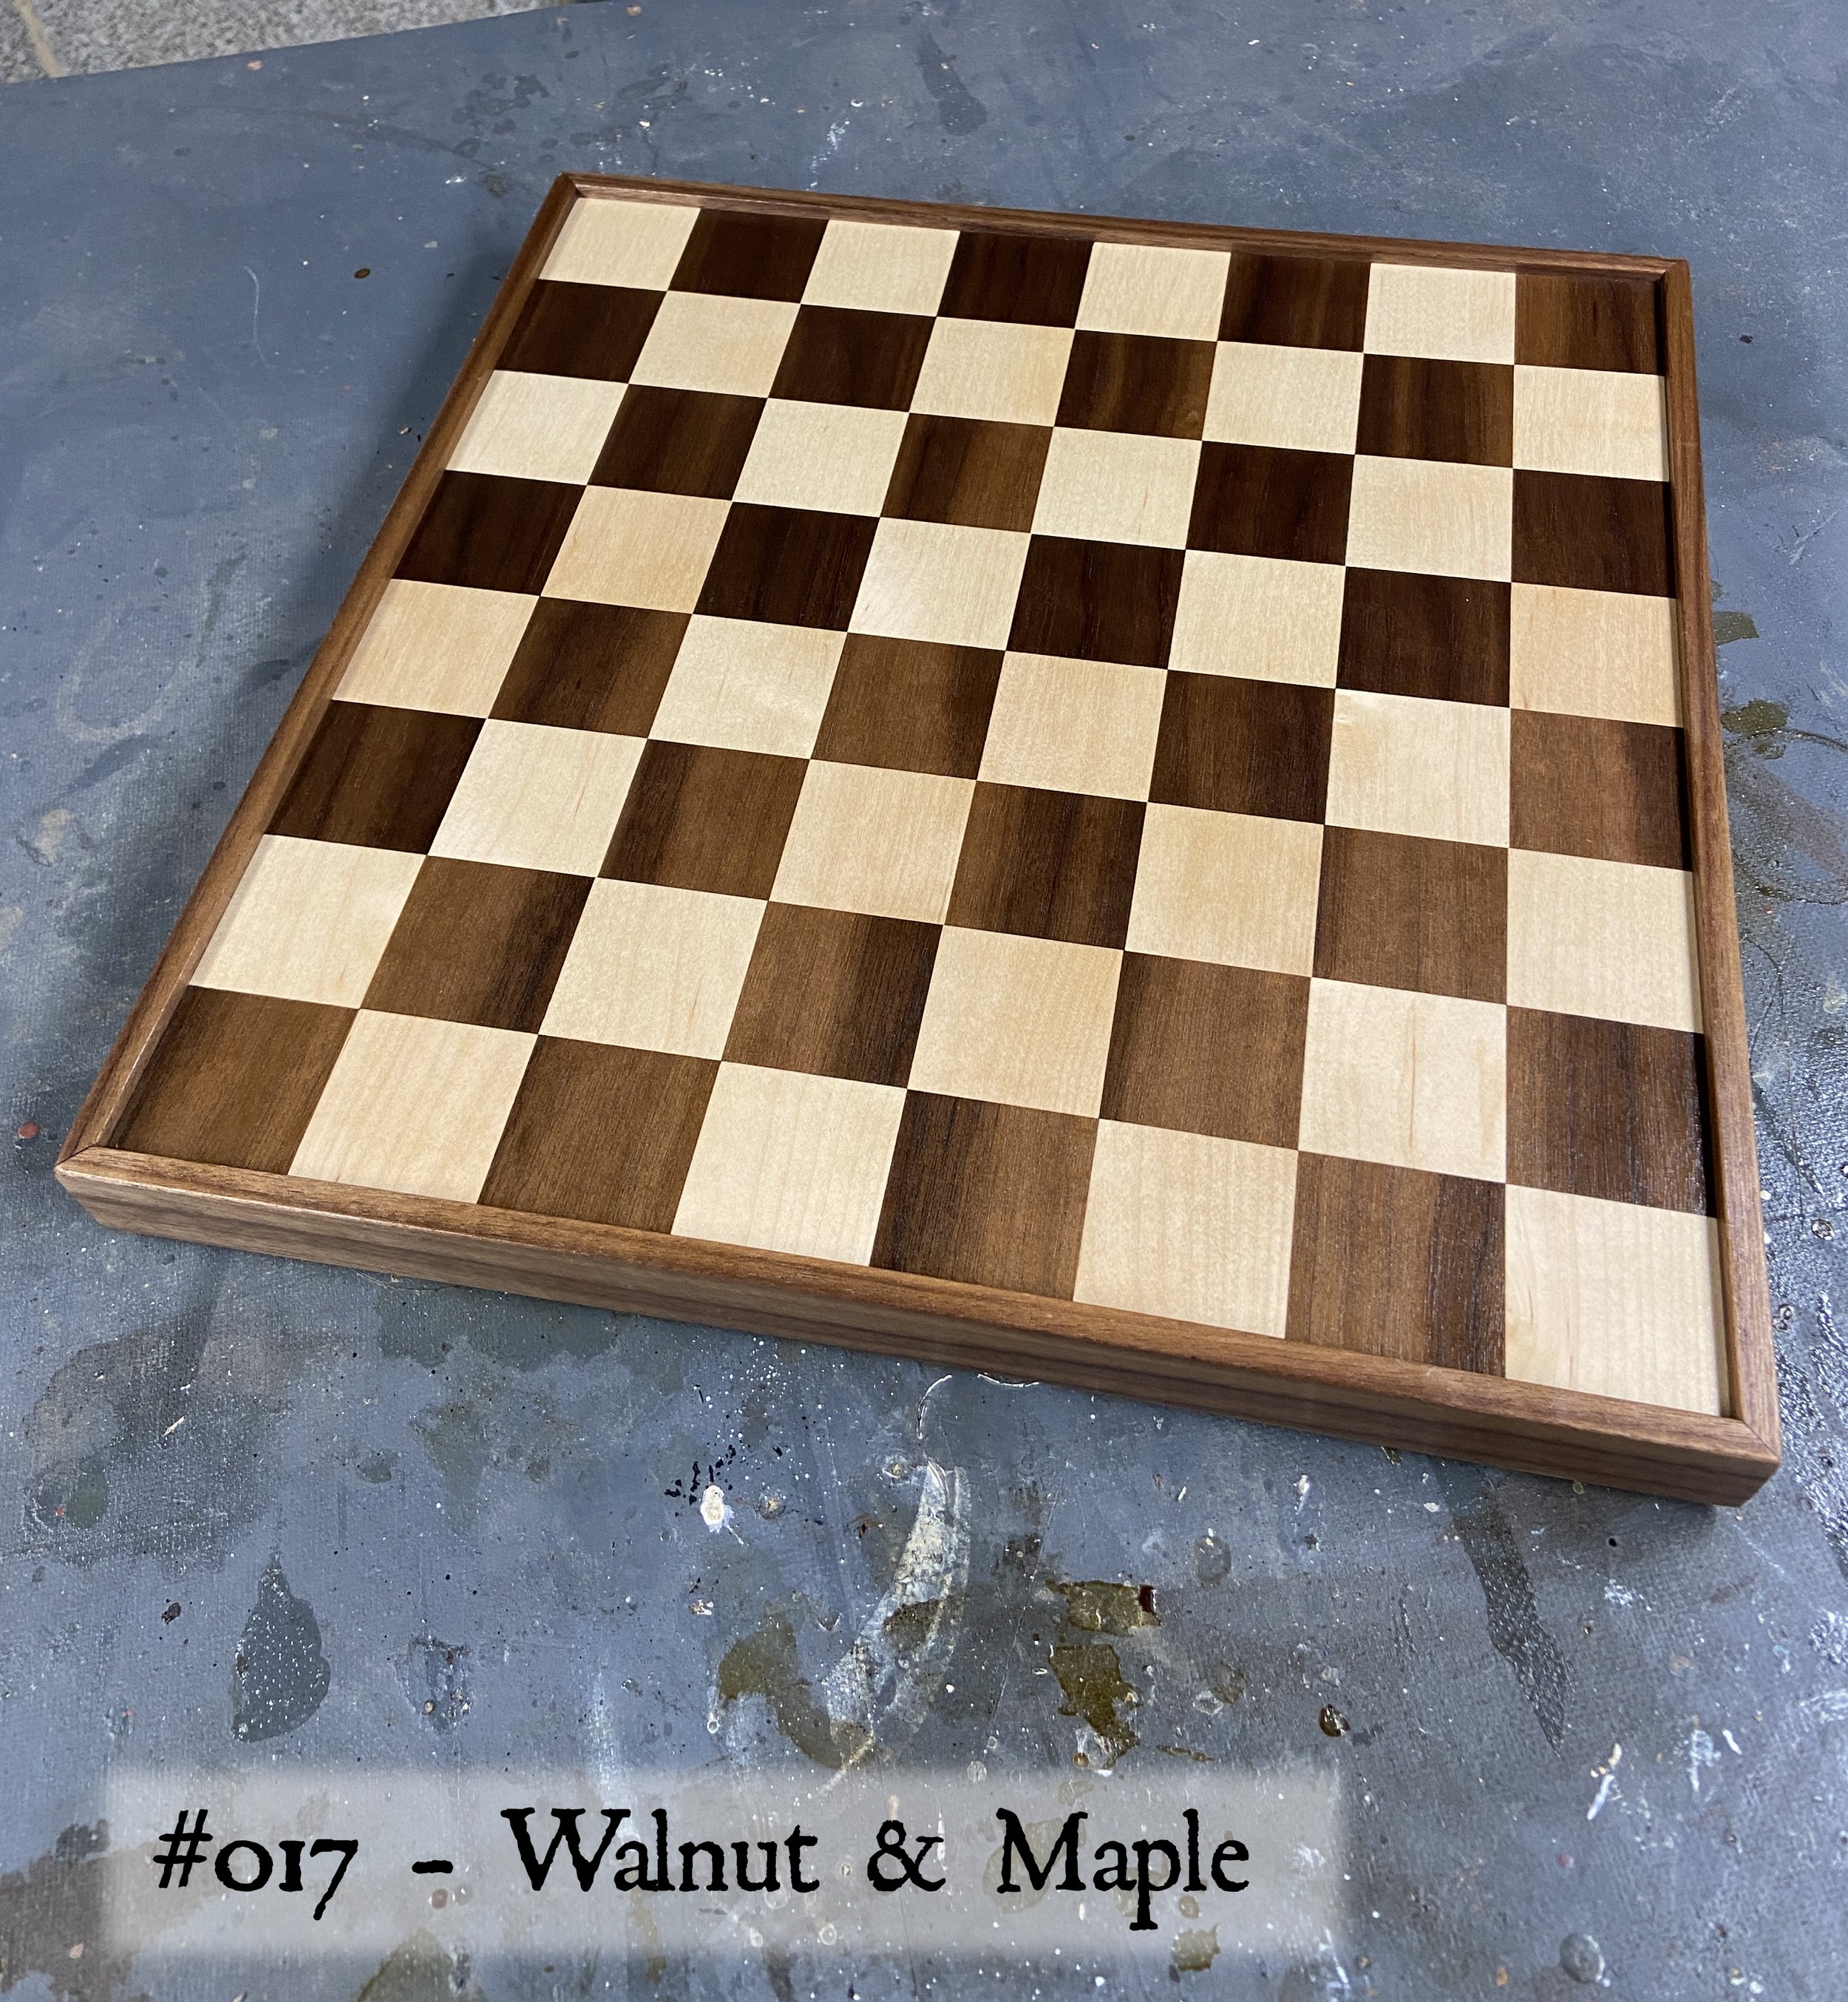 Board #017 – Walnut & Maple